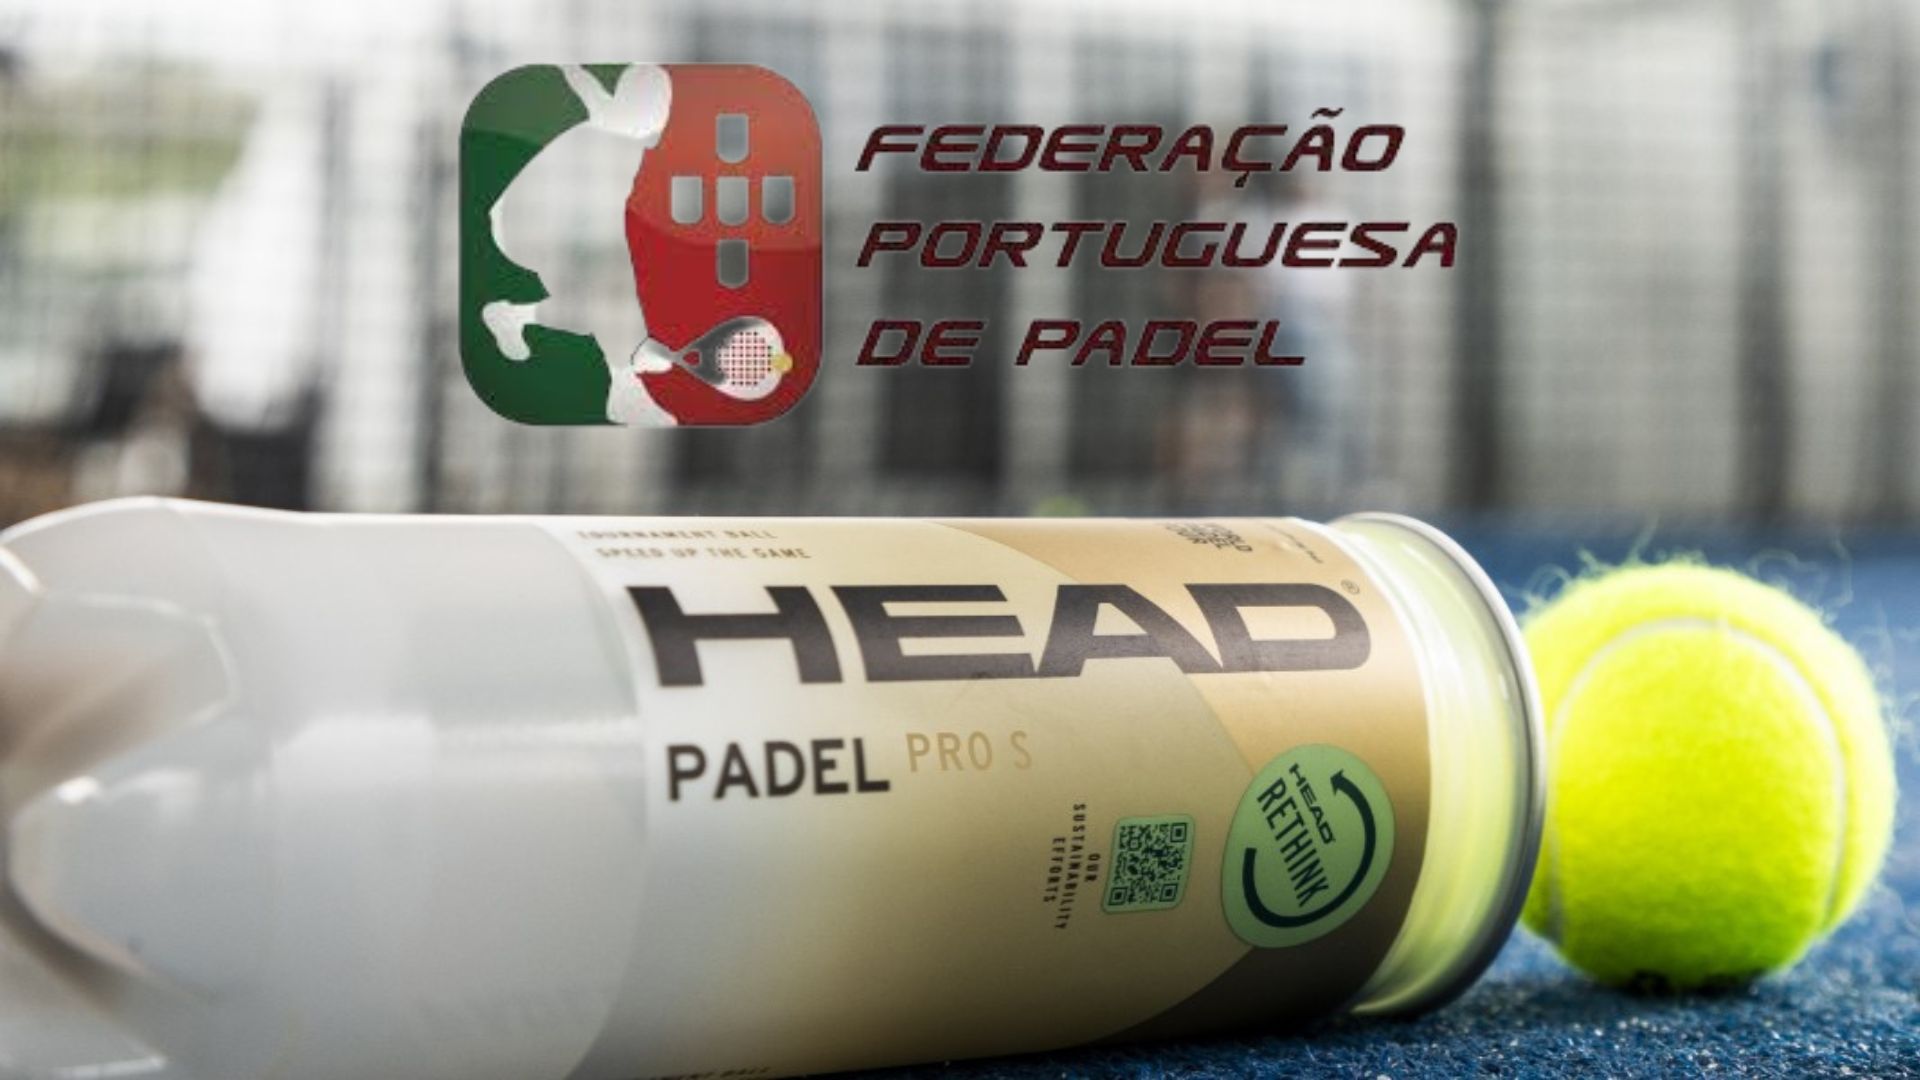 Head renova el seu contracte amb la Federació Portuguesa de padel, amb alguna cosa nova!